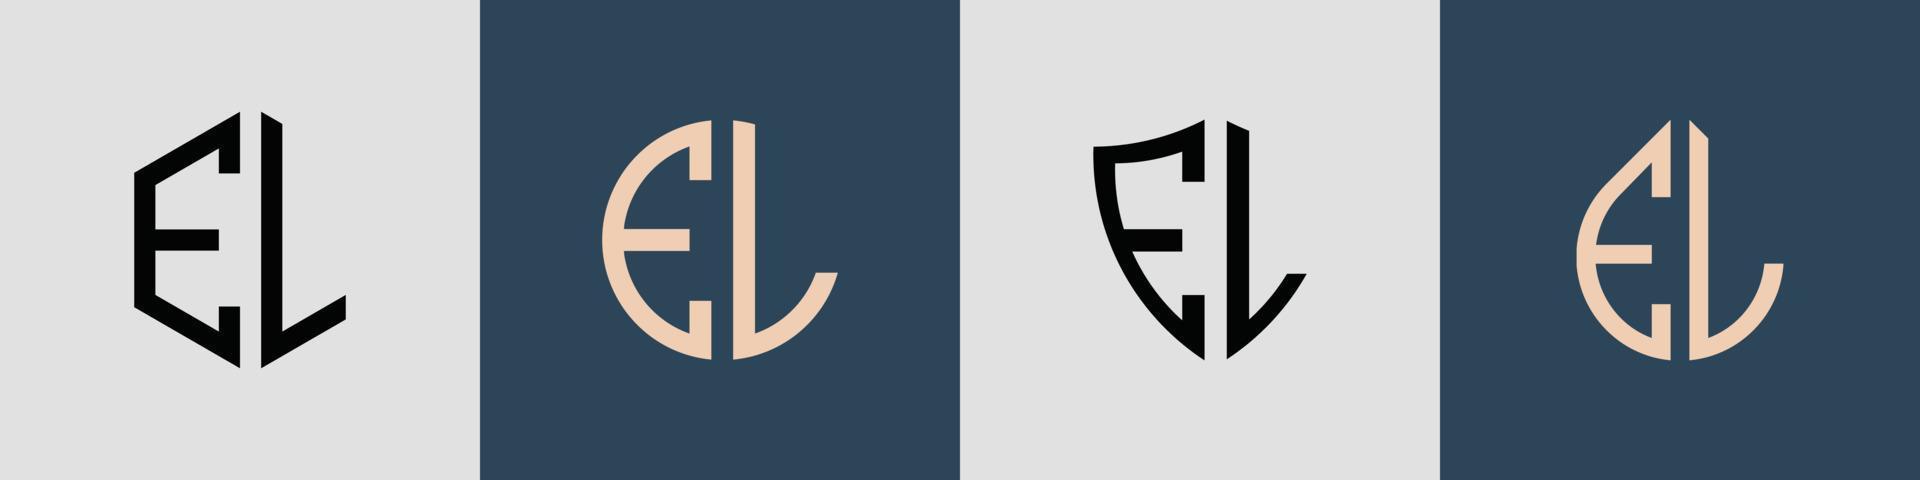 kreativa enkla initiala bokstäver el logo designs bunt. vektor